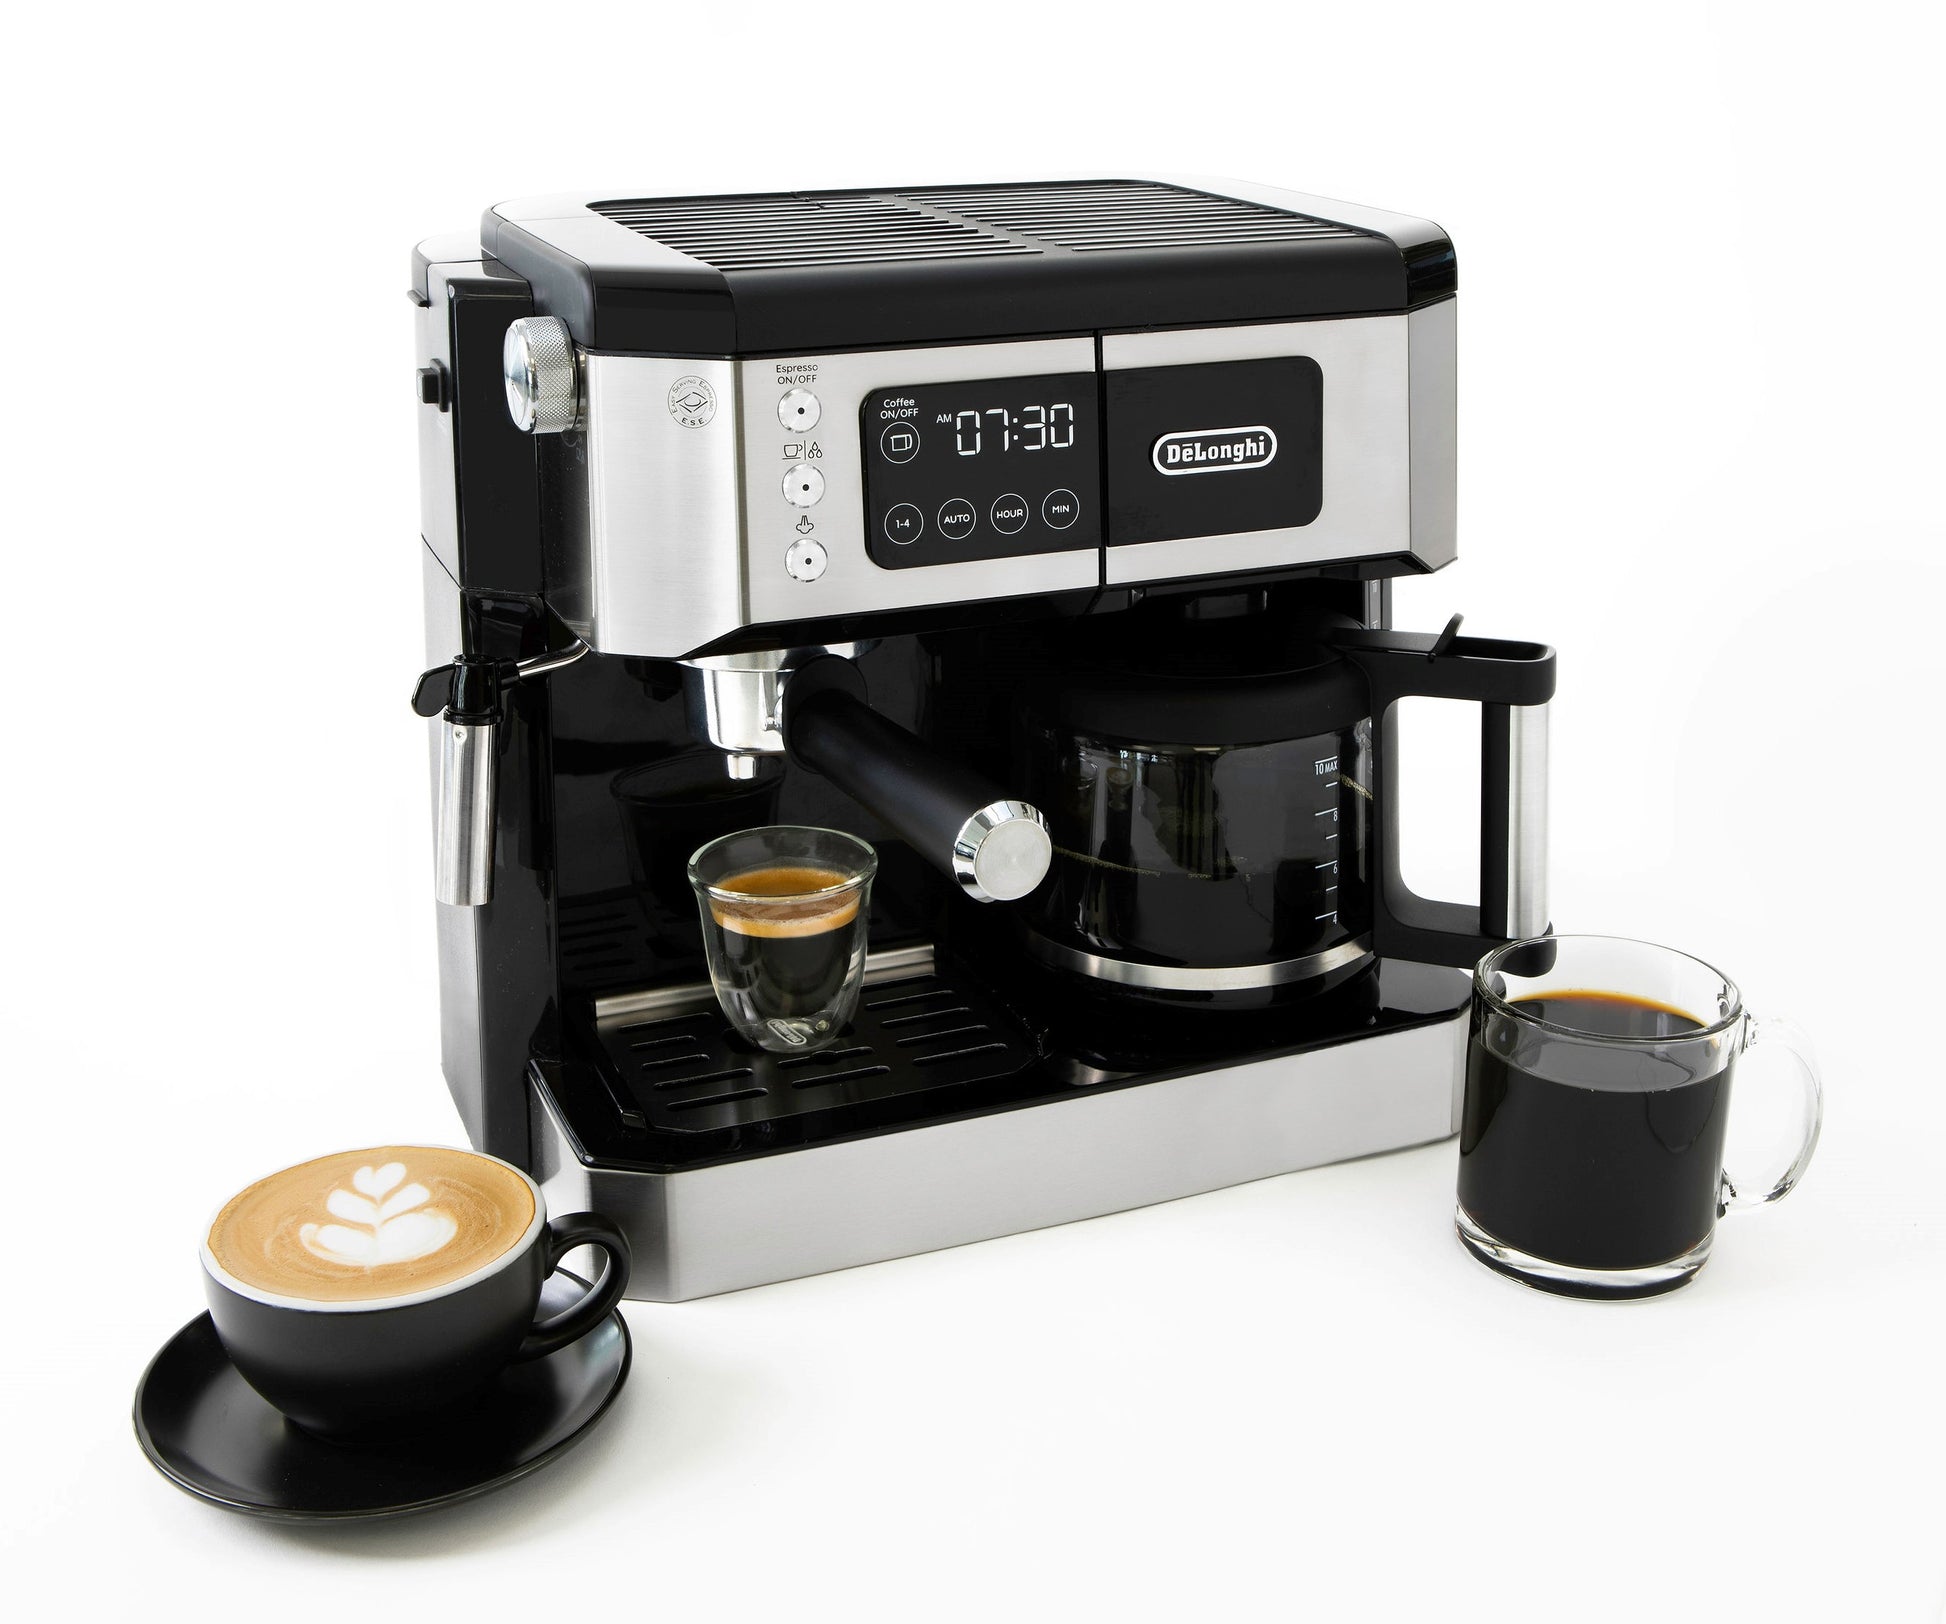 DeLonghi Combination All In One Cappuccino Espresso & Drip Coffee